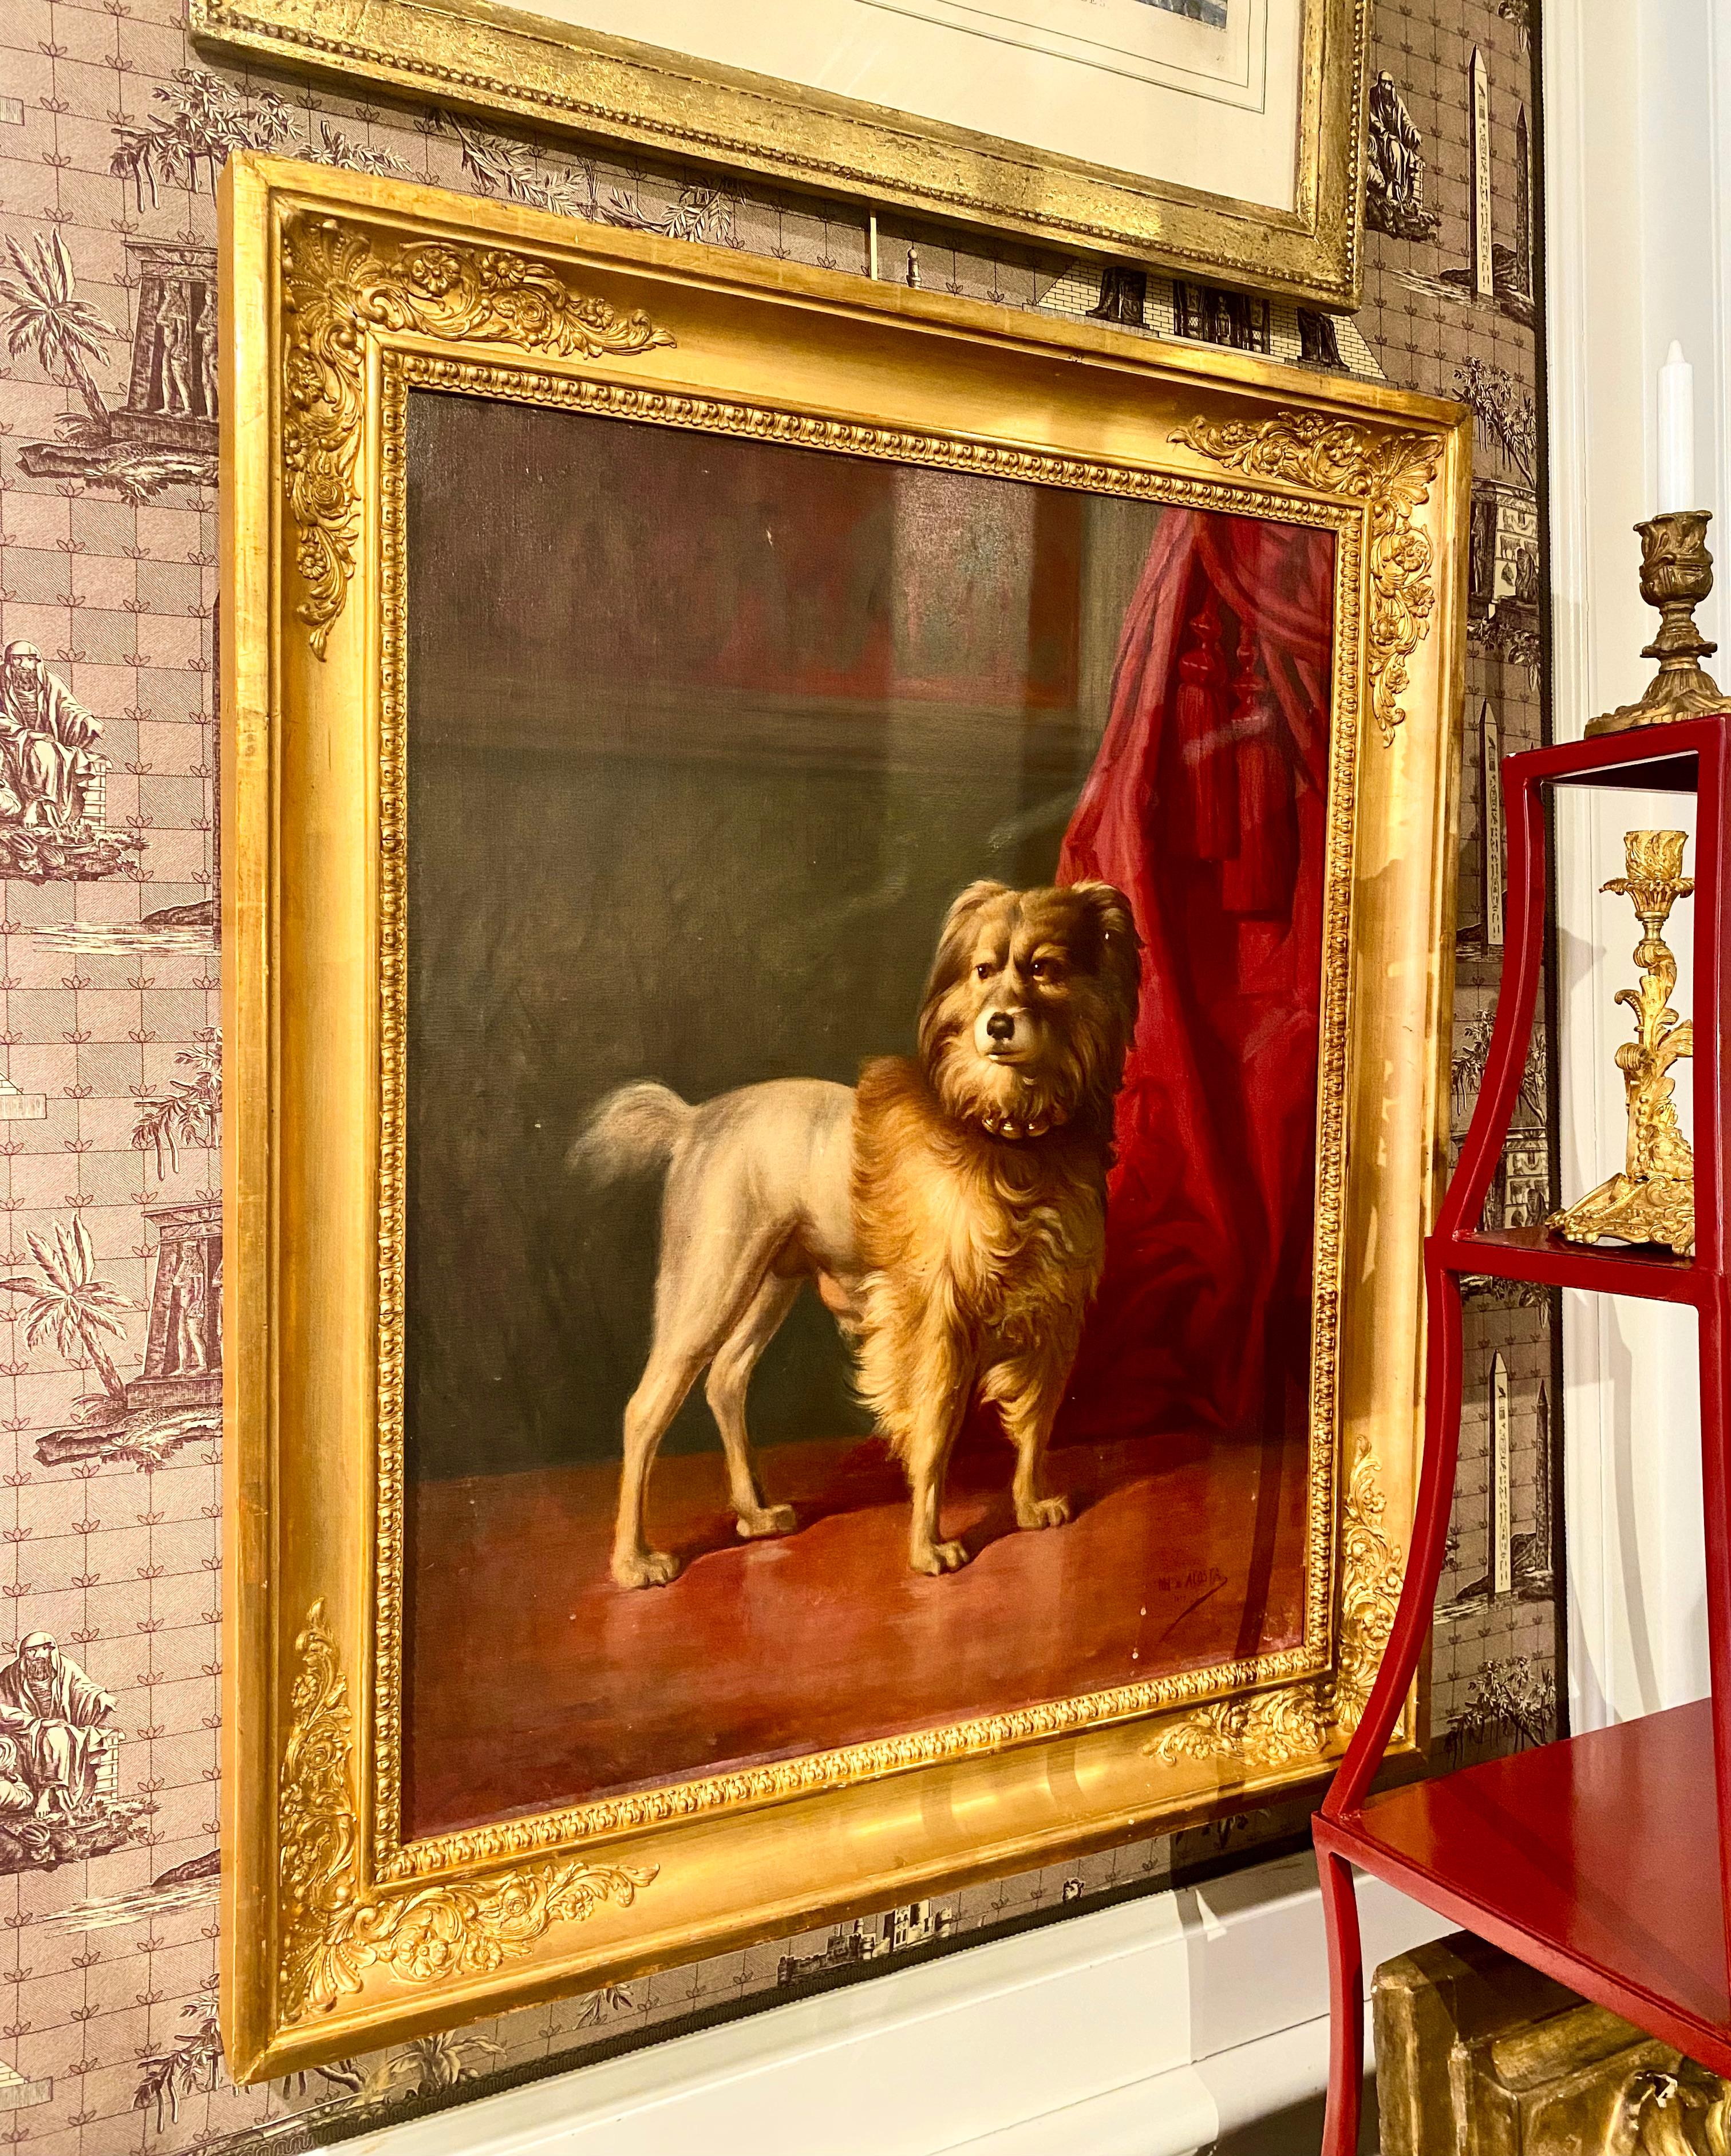 Portrait de Friel, chien des ducs d'Osuna, par Marcos Hiràldez Di Acosta, 1879

Splendide grand tableau signé de Marcos Hiráldez De Acosta (1830-1896), un protégé de la famille du duc d'Osuna, originaire de Madrid. 

Le chien fidèle du duc,